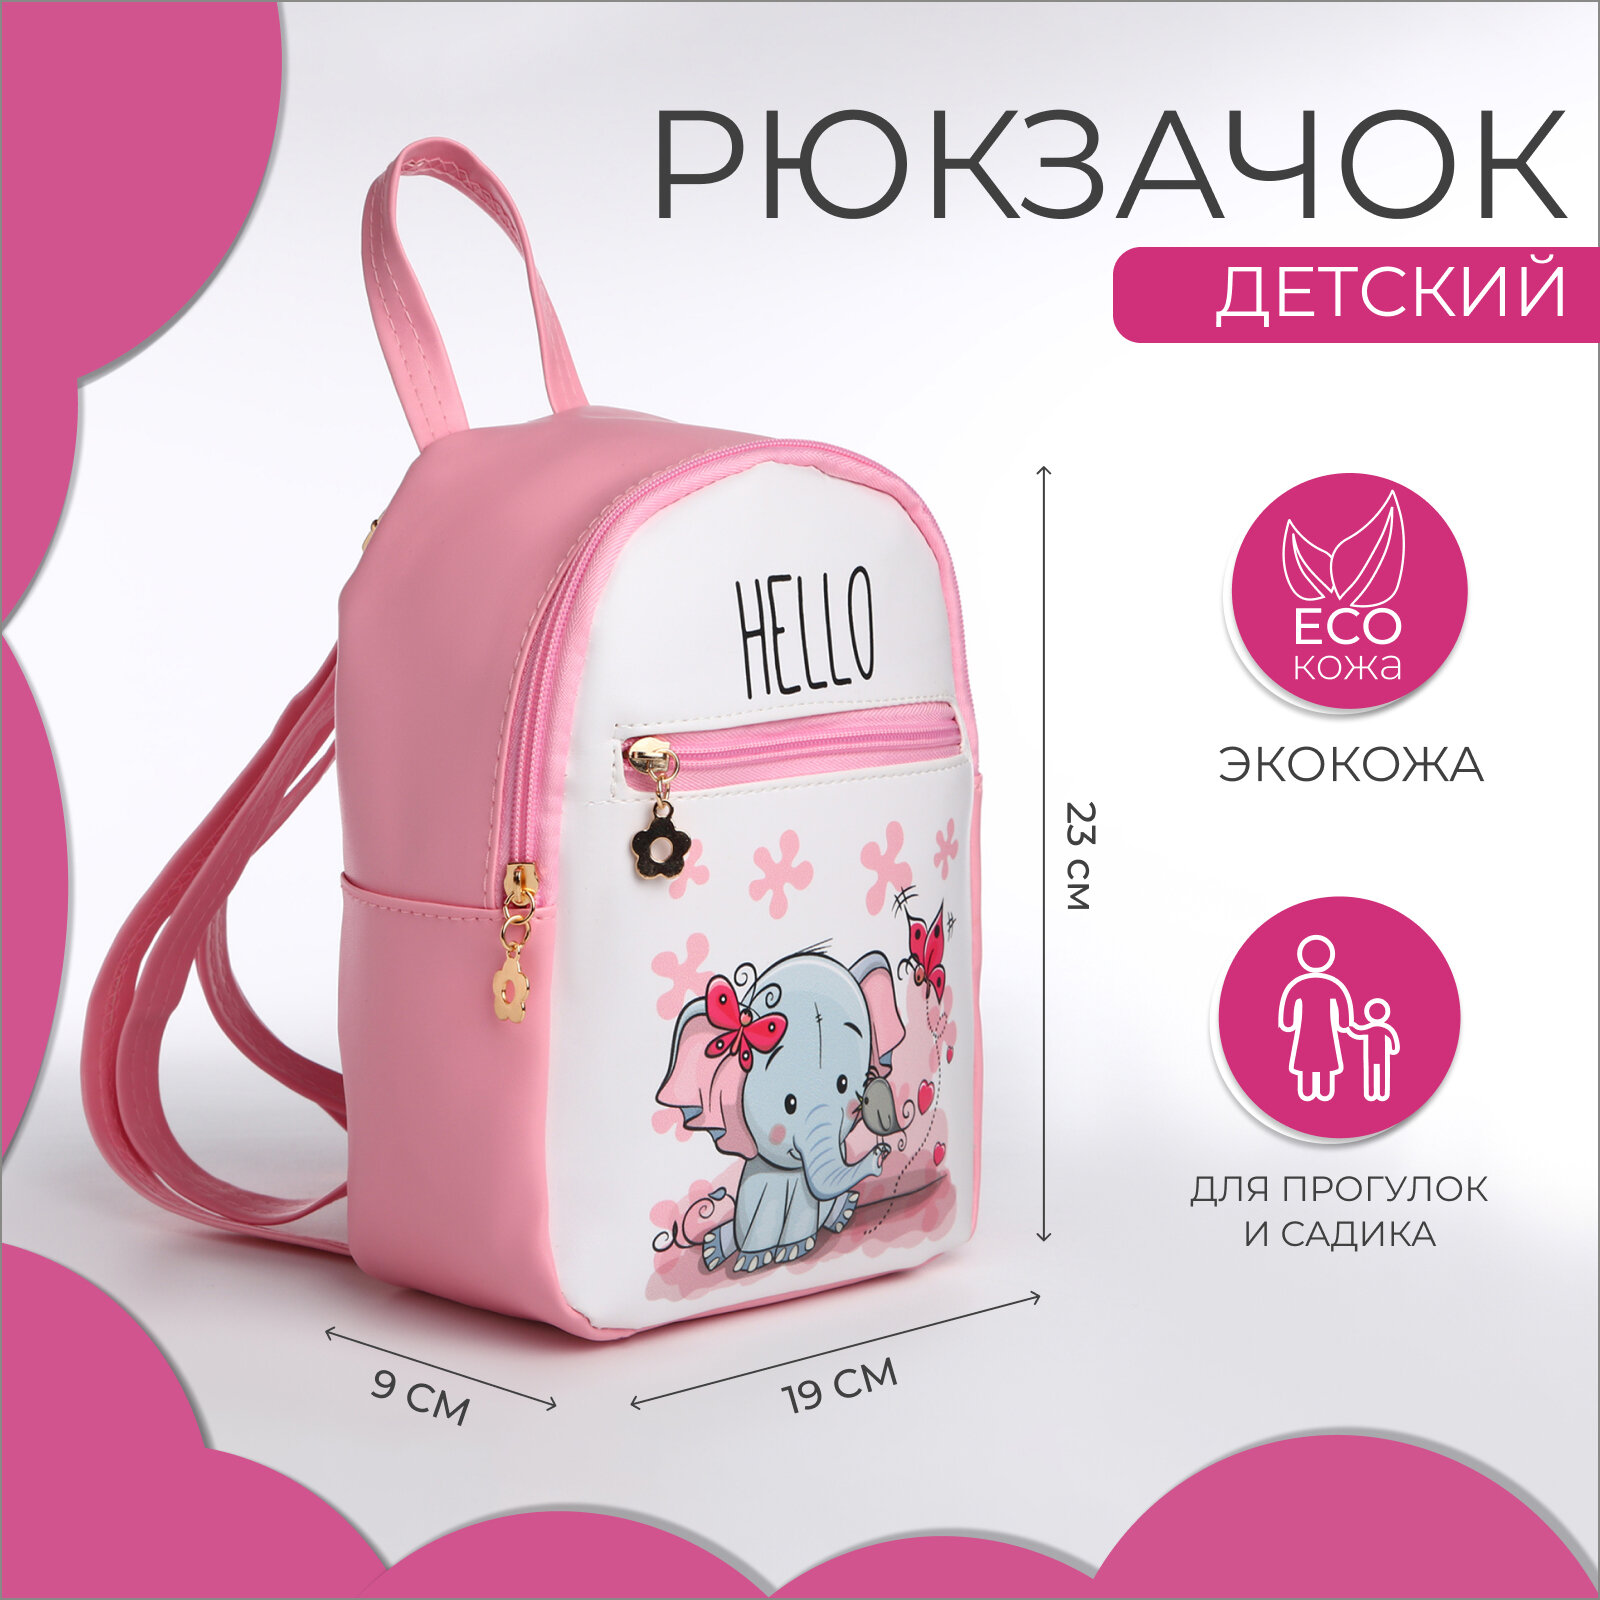 Рюкзак детский на молнии, цвет розовый (1шт.)